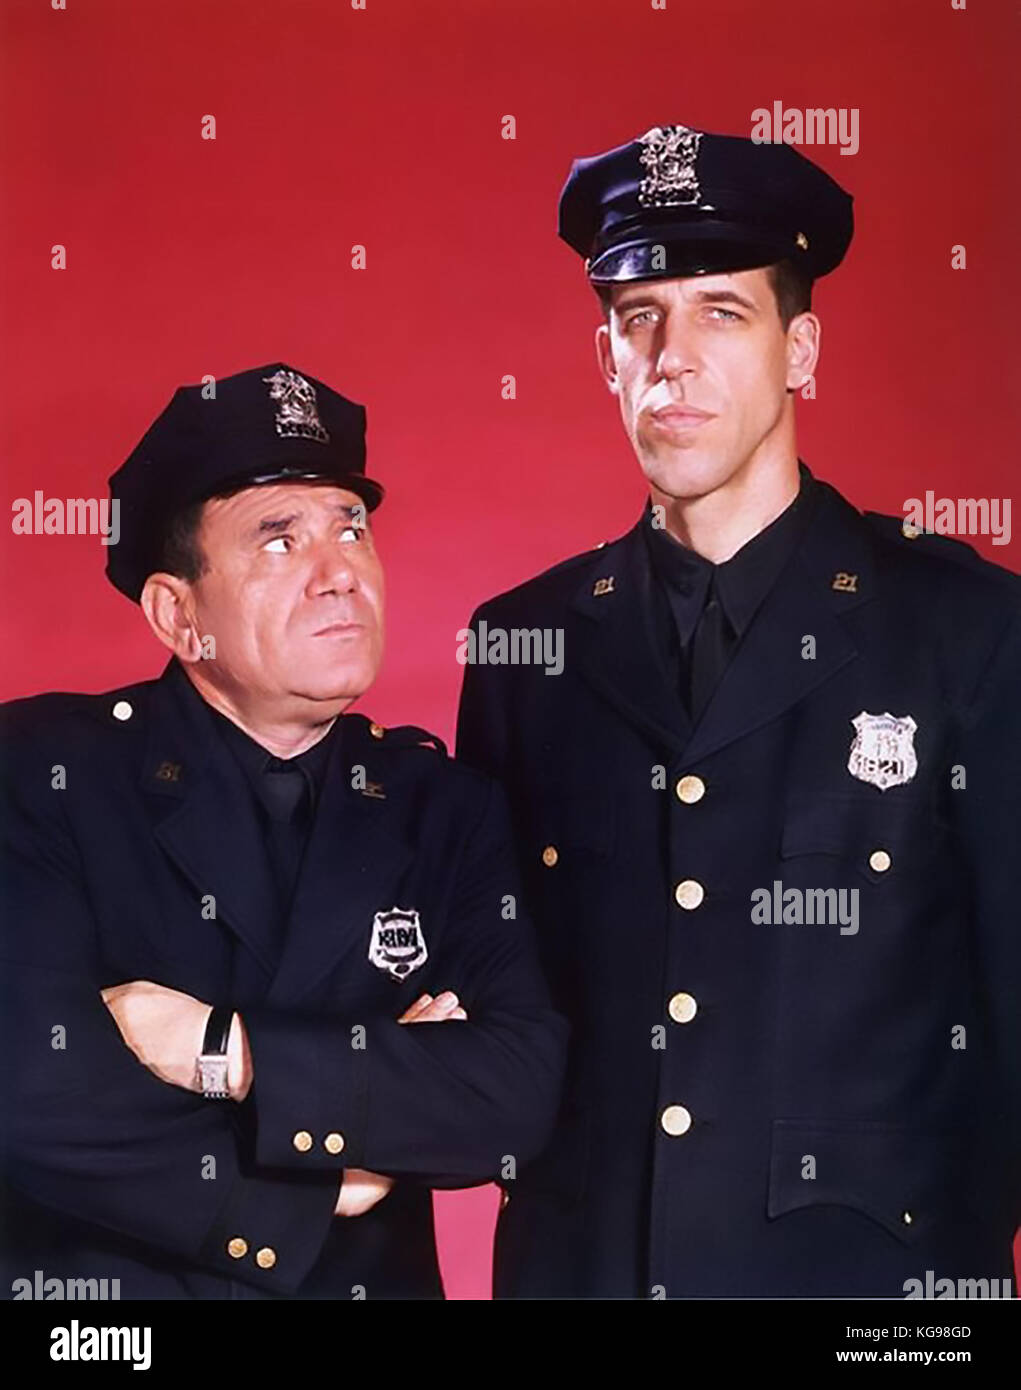 AUTO 54, DOVE SEI? Serie televisiva NBC Comedy 1961-1963 con Fred Gwynne a destra e Joe Ross Foto Stock